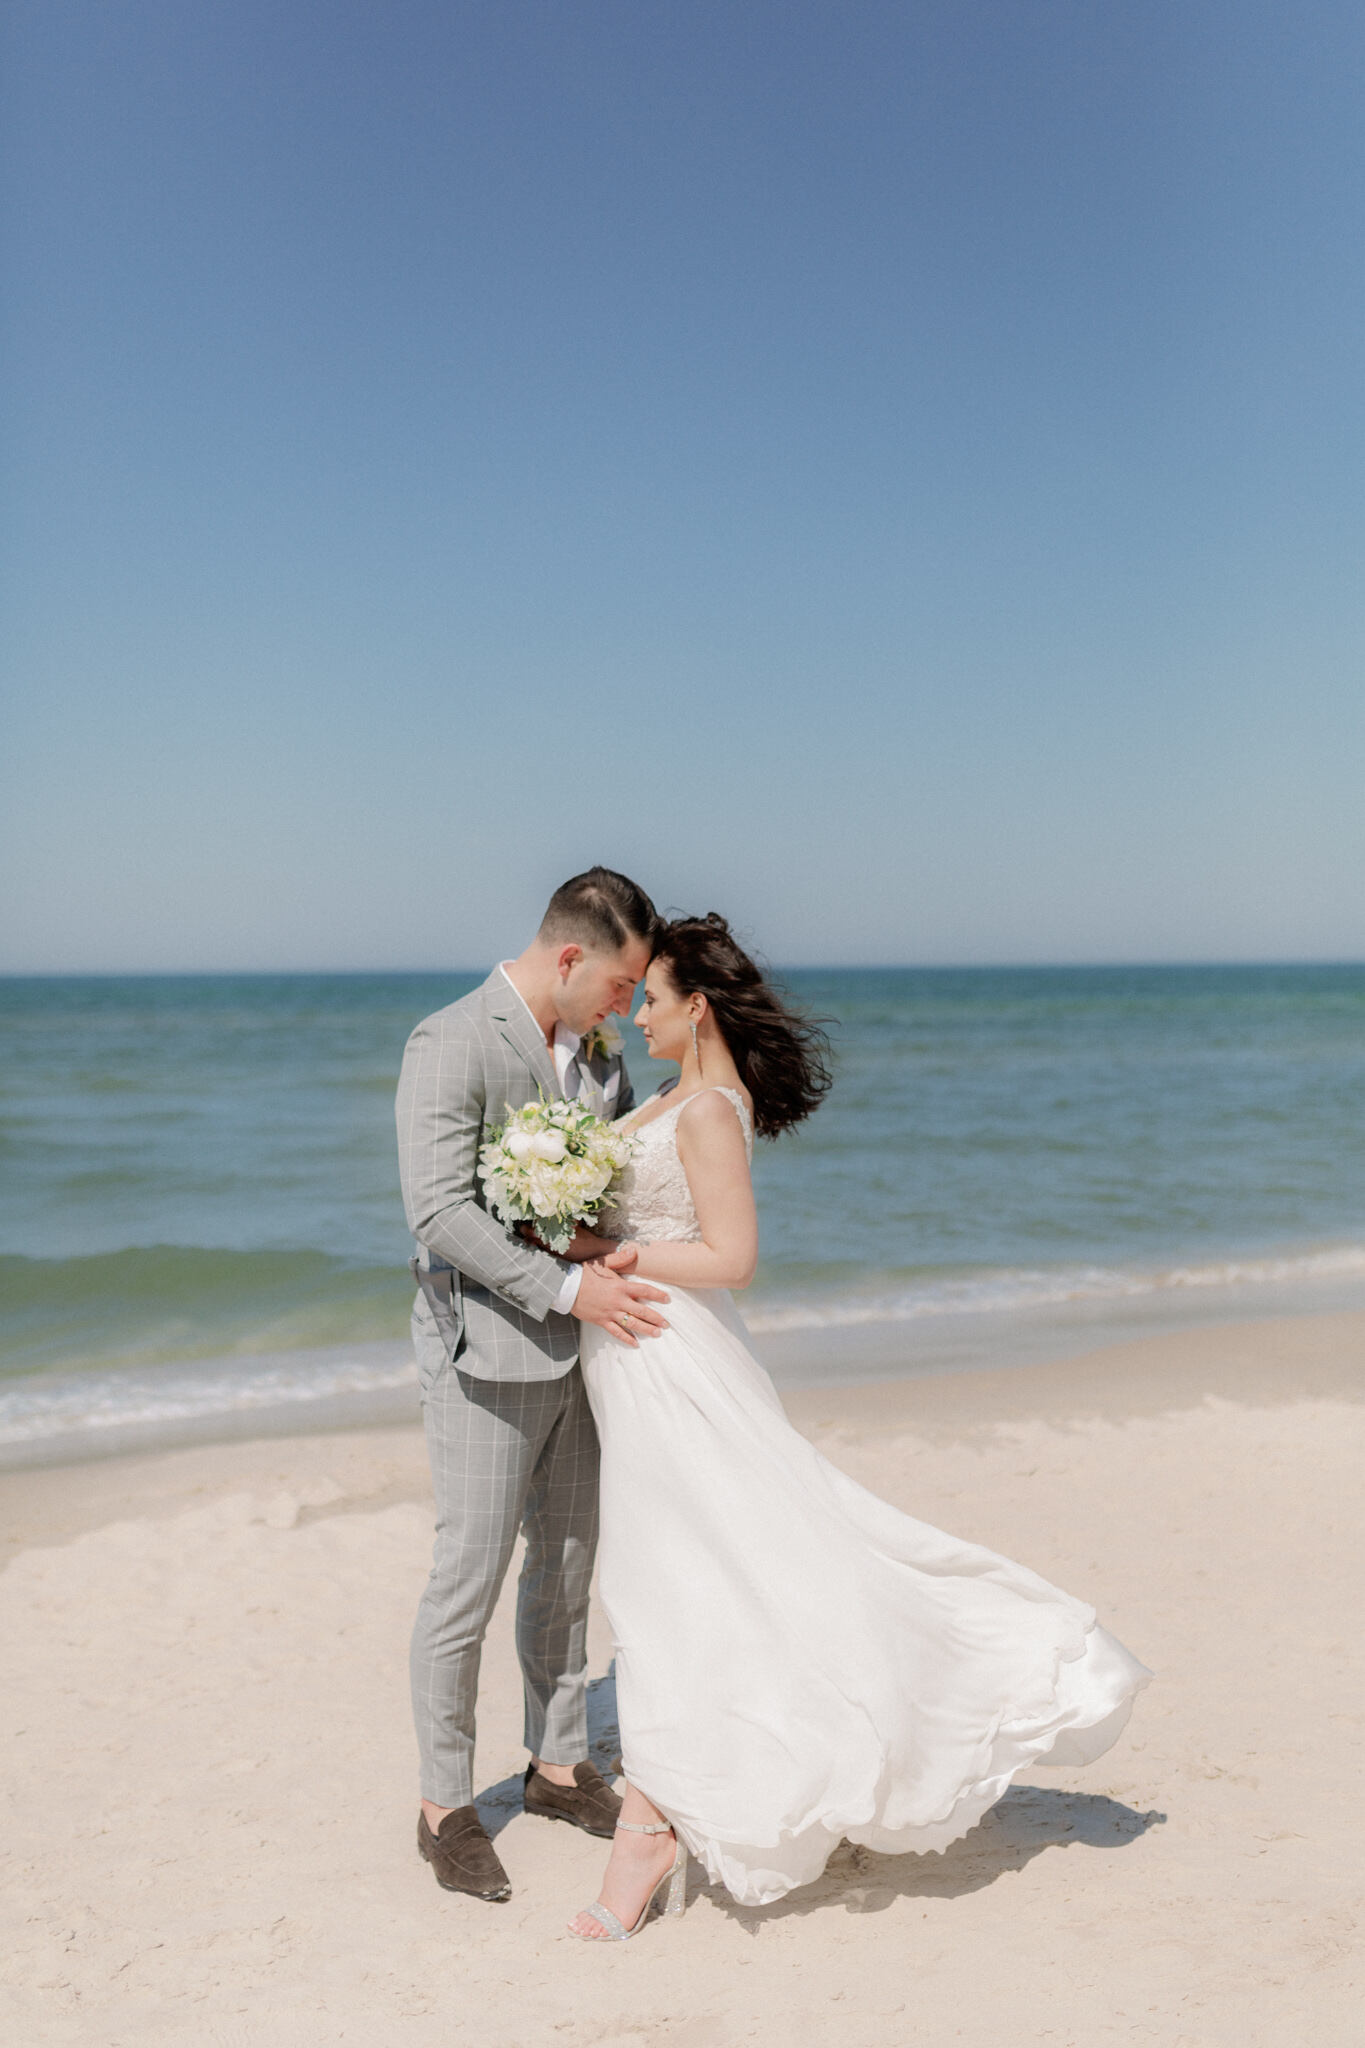 Ślub nad morzem - para młoda na plaży, organizacja ślubu nad morzem | Bogna Bojanowska wedding planner